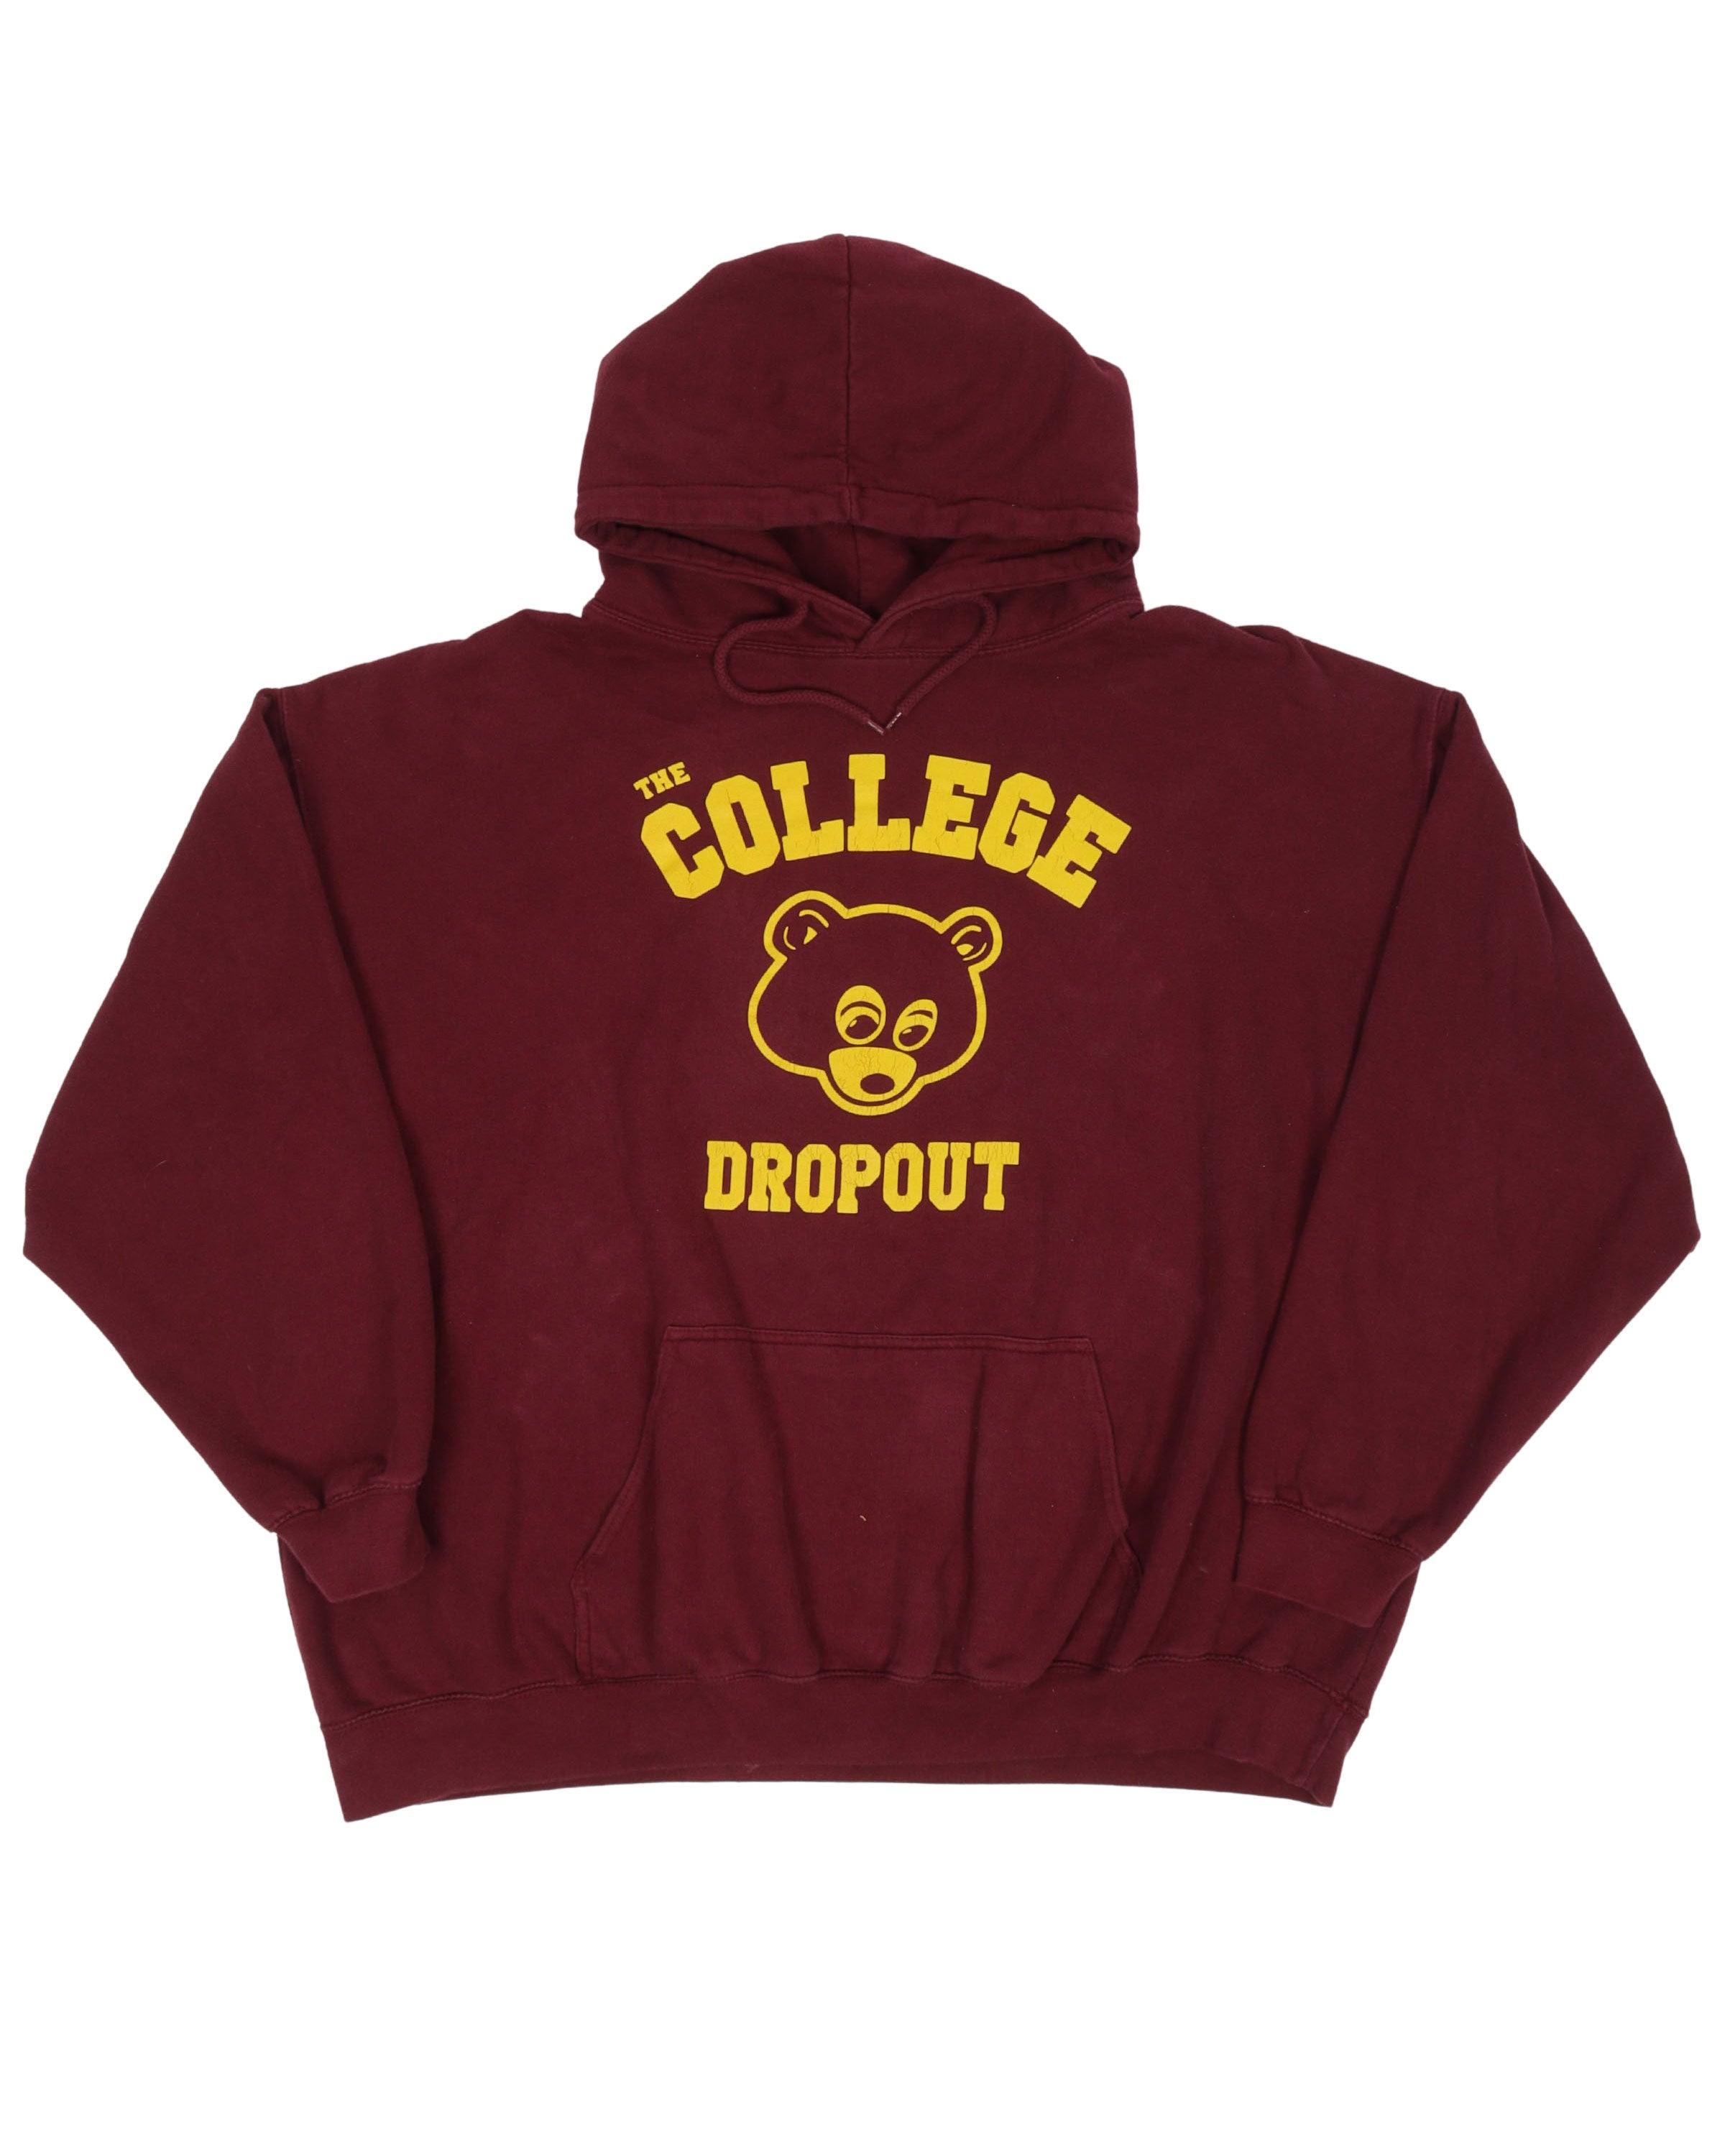 Vintage College Dropout Hoodie